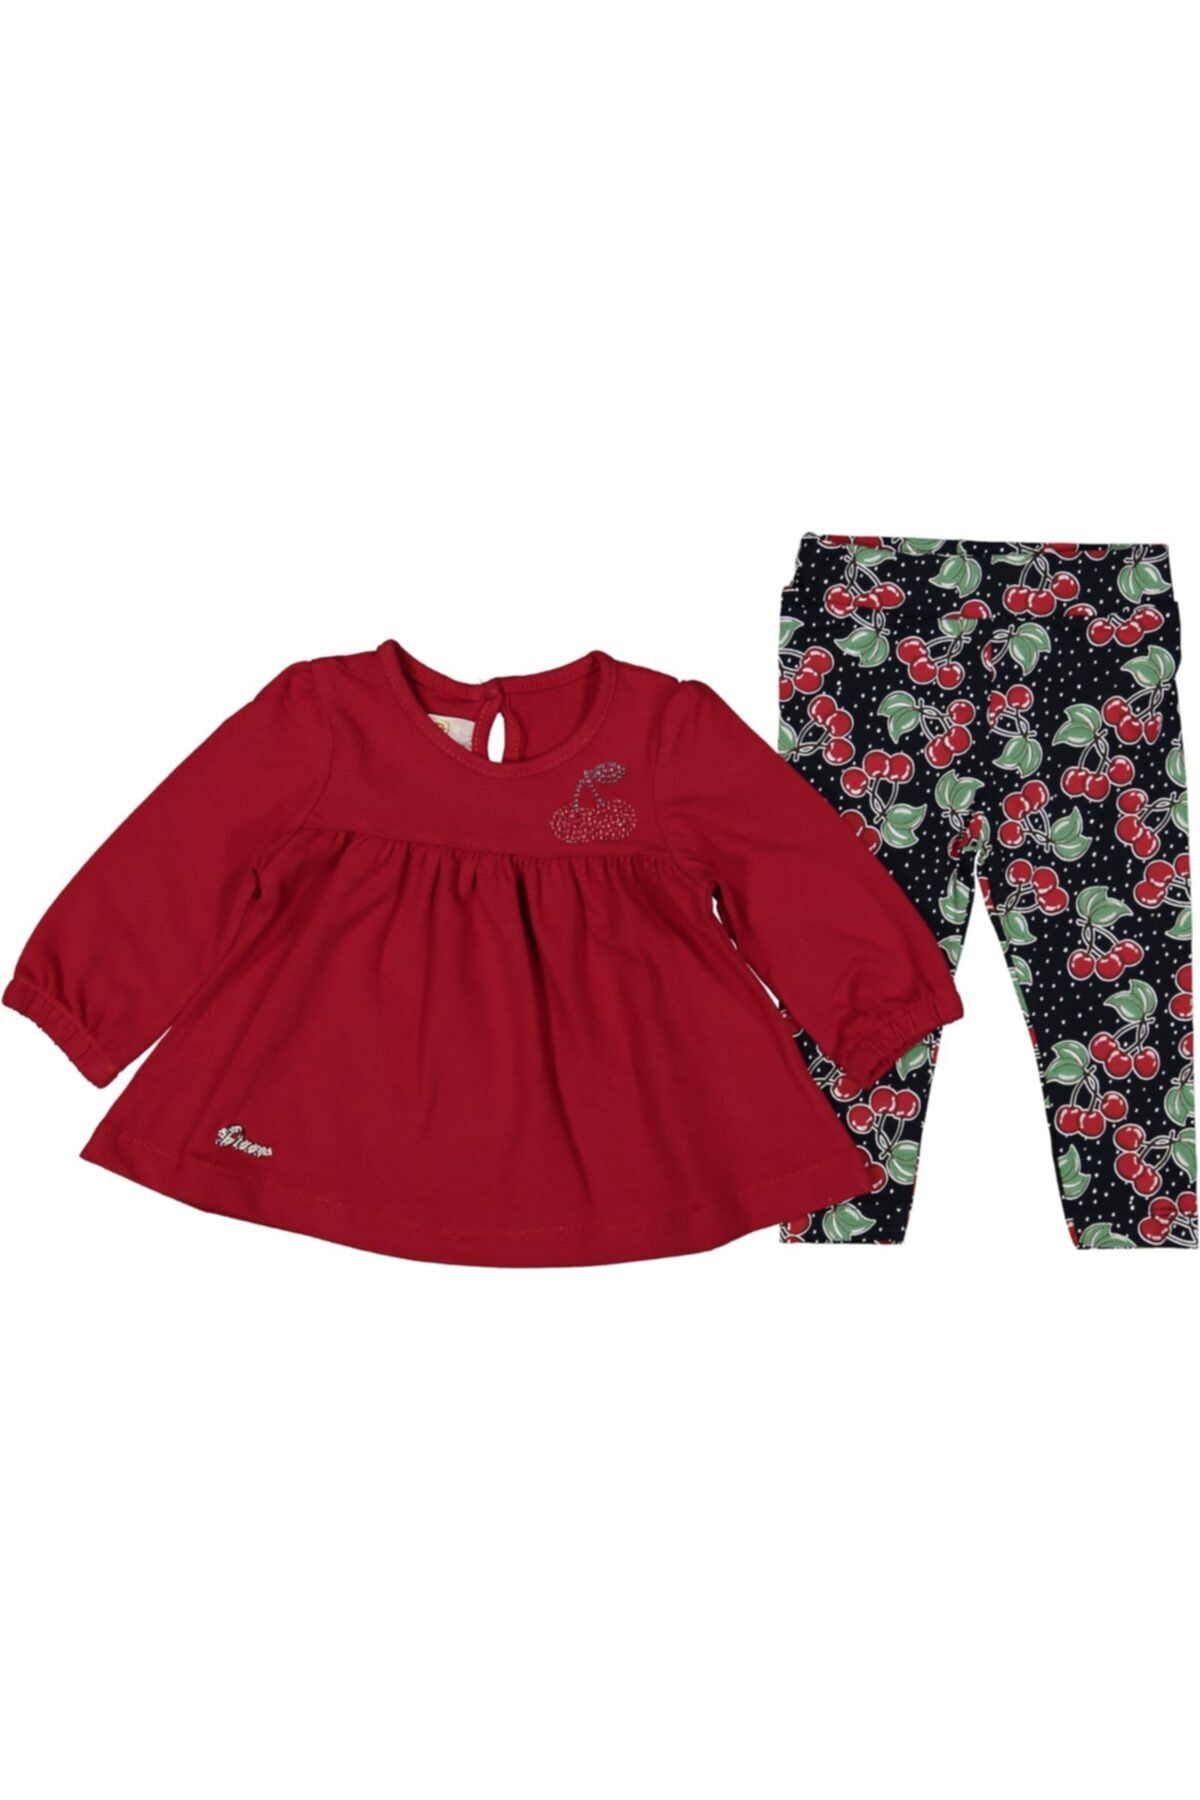 DECO Kız Bebek Kırmızı Desenli Taytlı Bluz Takım